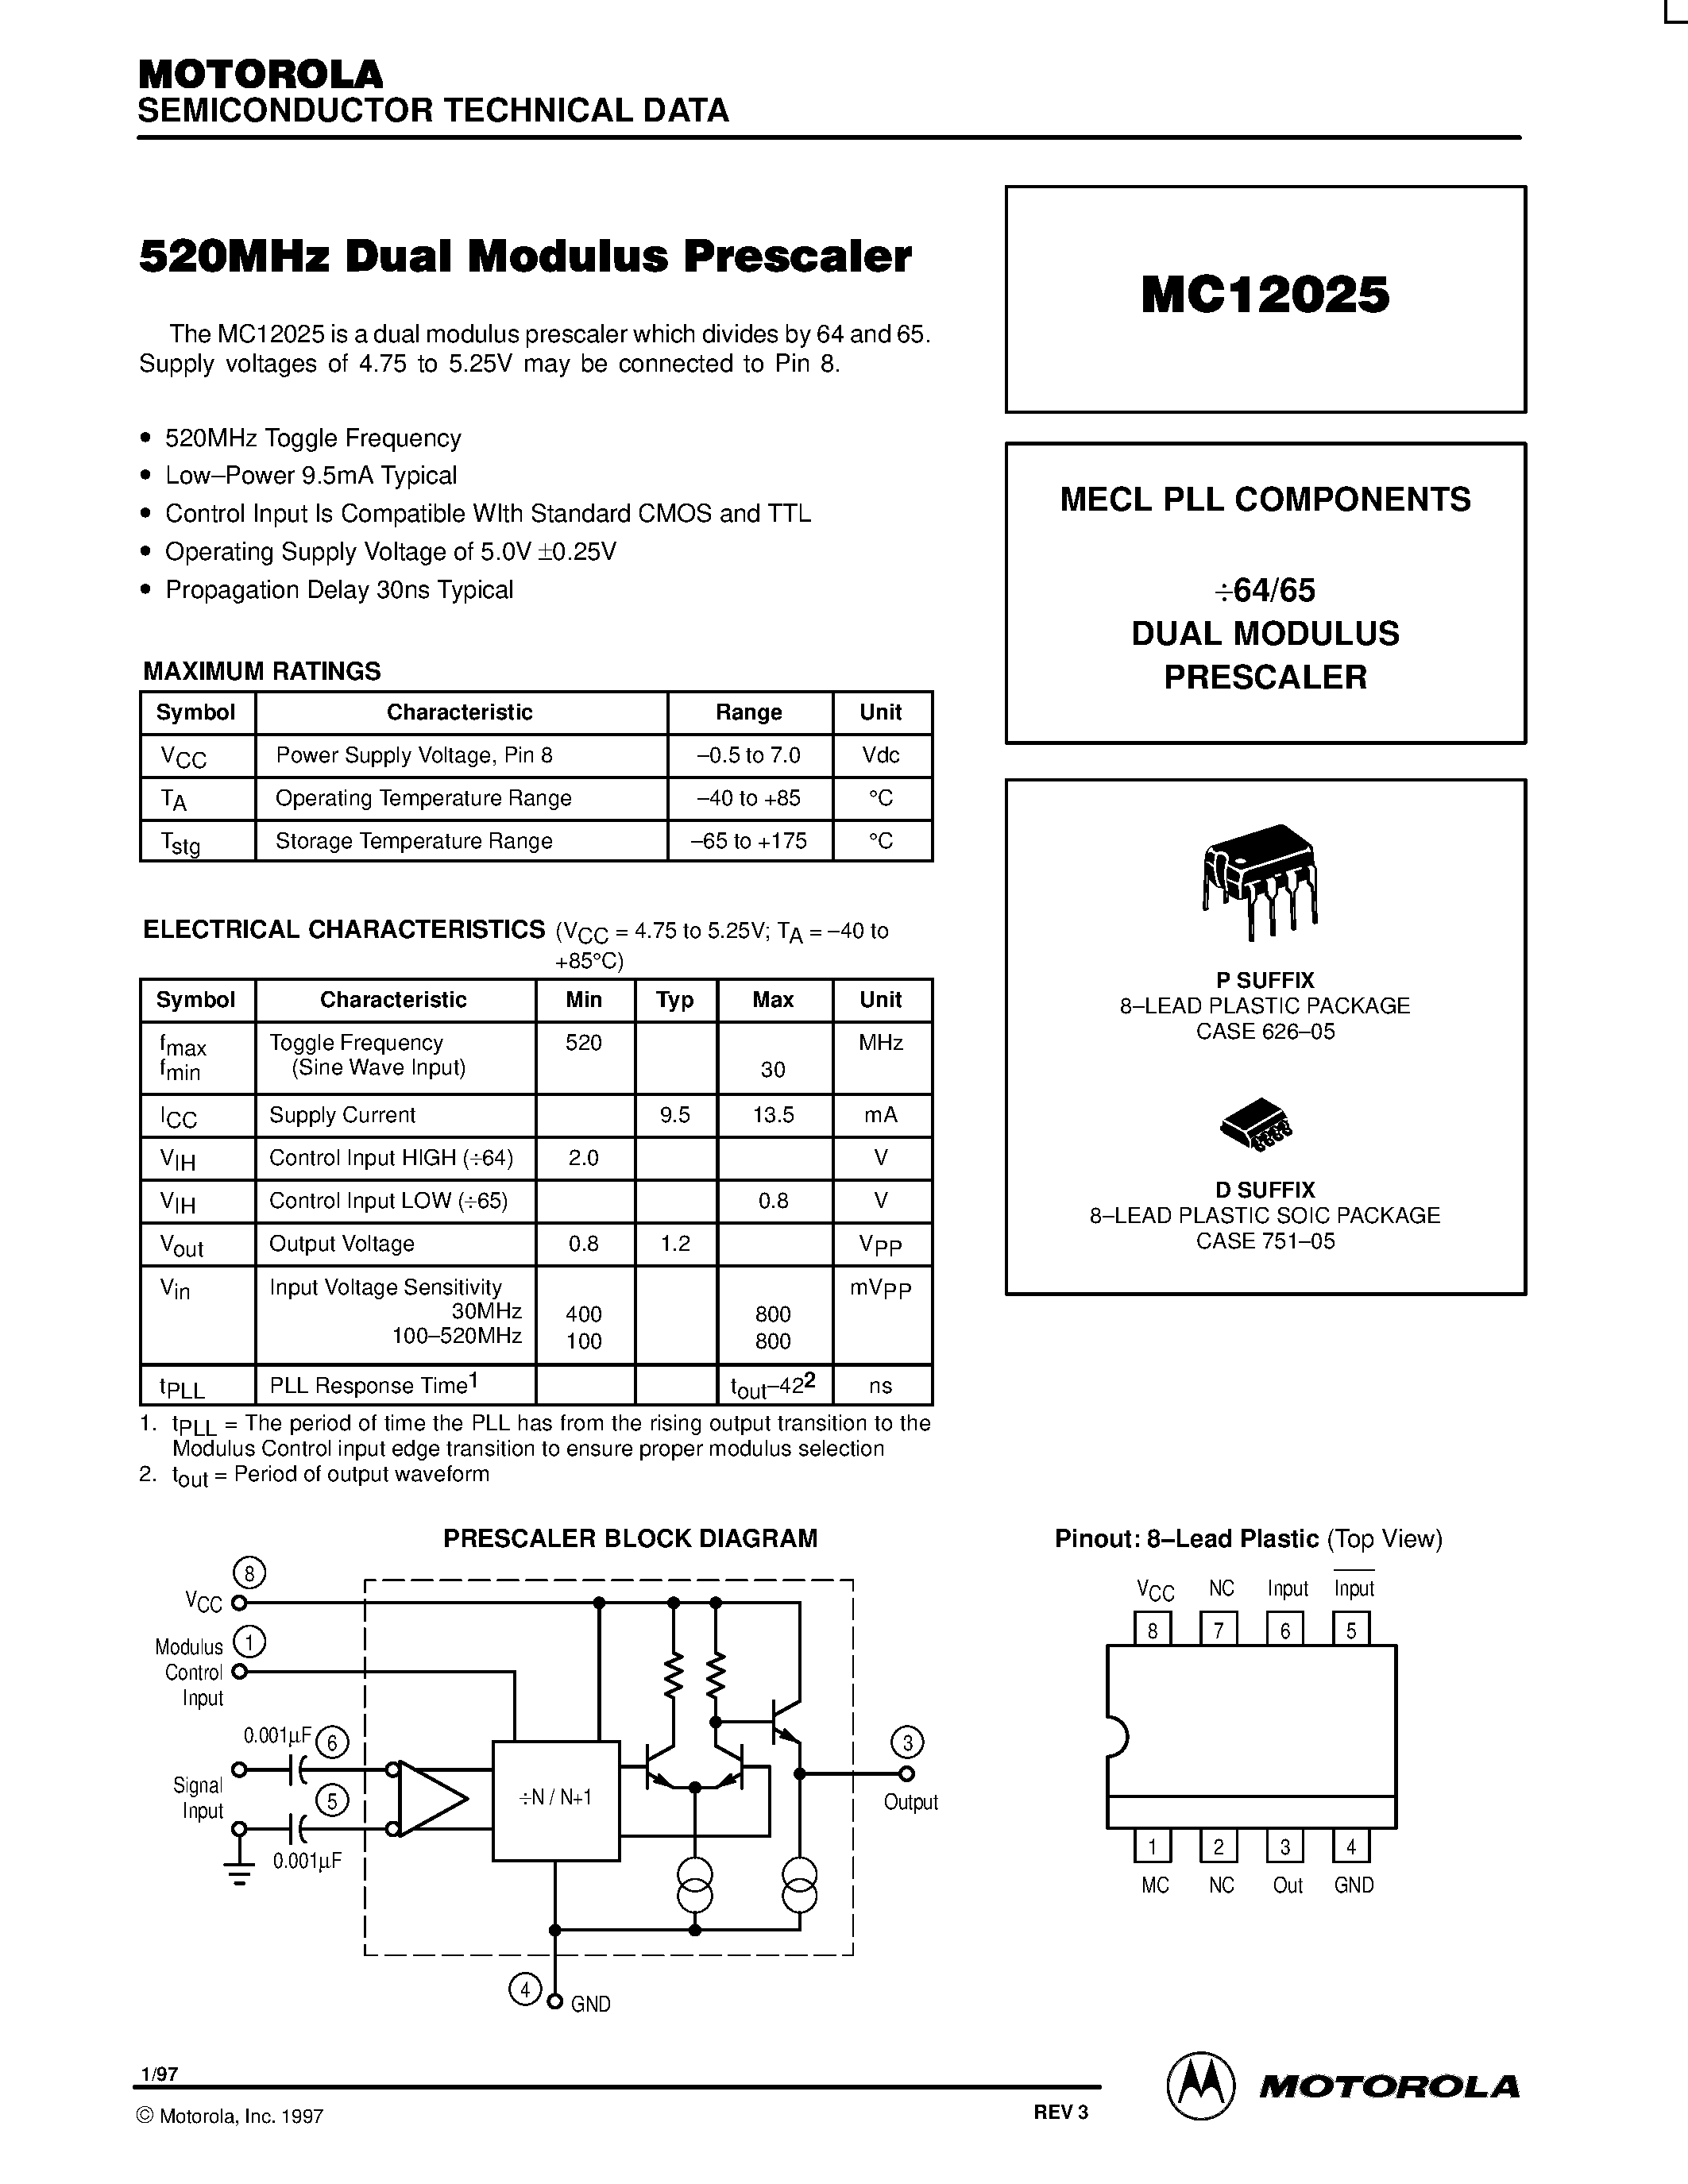 Datasheet MC12025D - MECL PLL COMPONENTS 64/65 DUAL MODULUS PRESCALER page 1